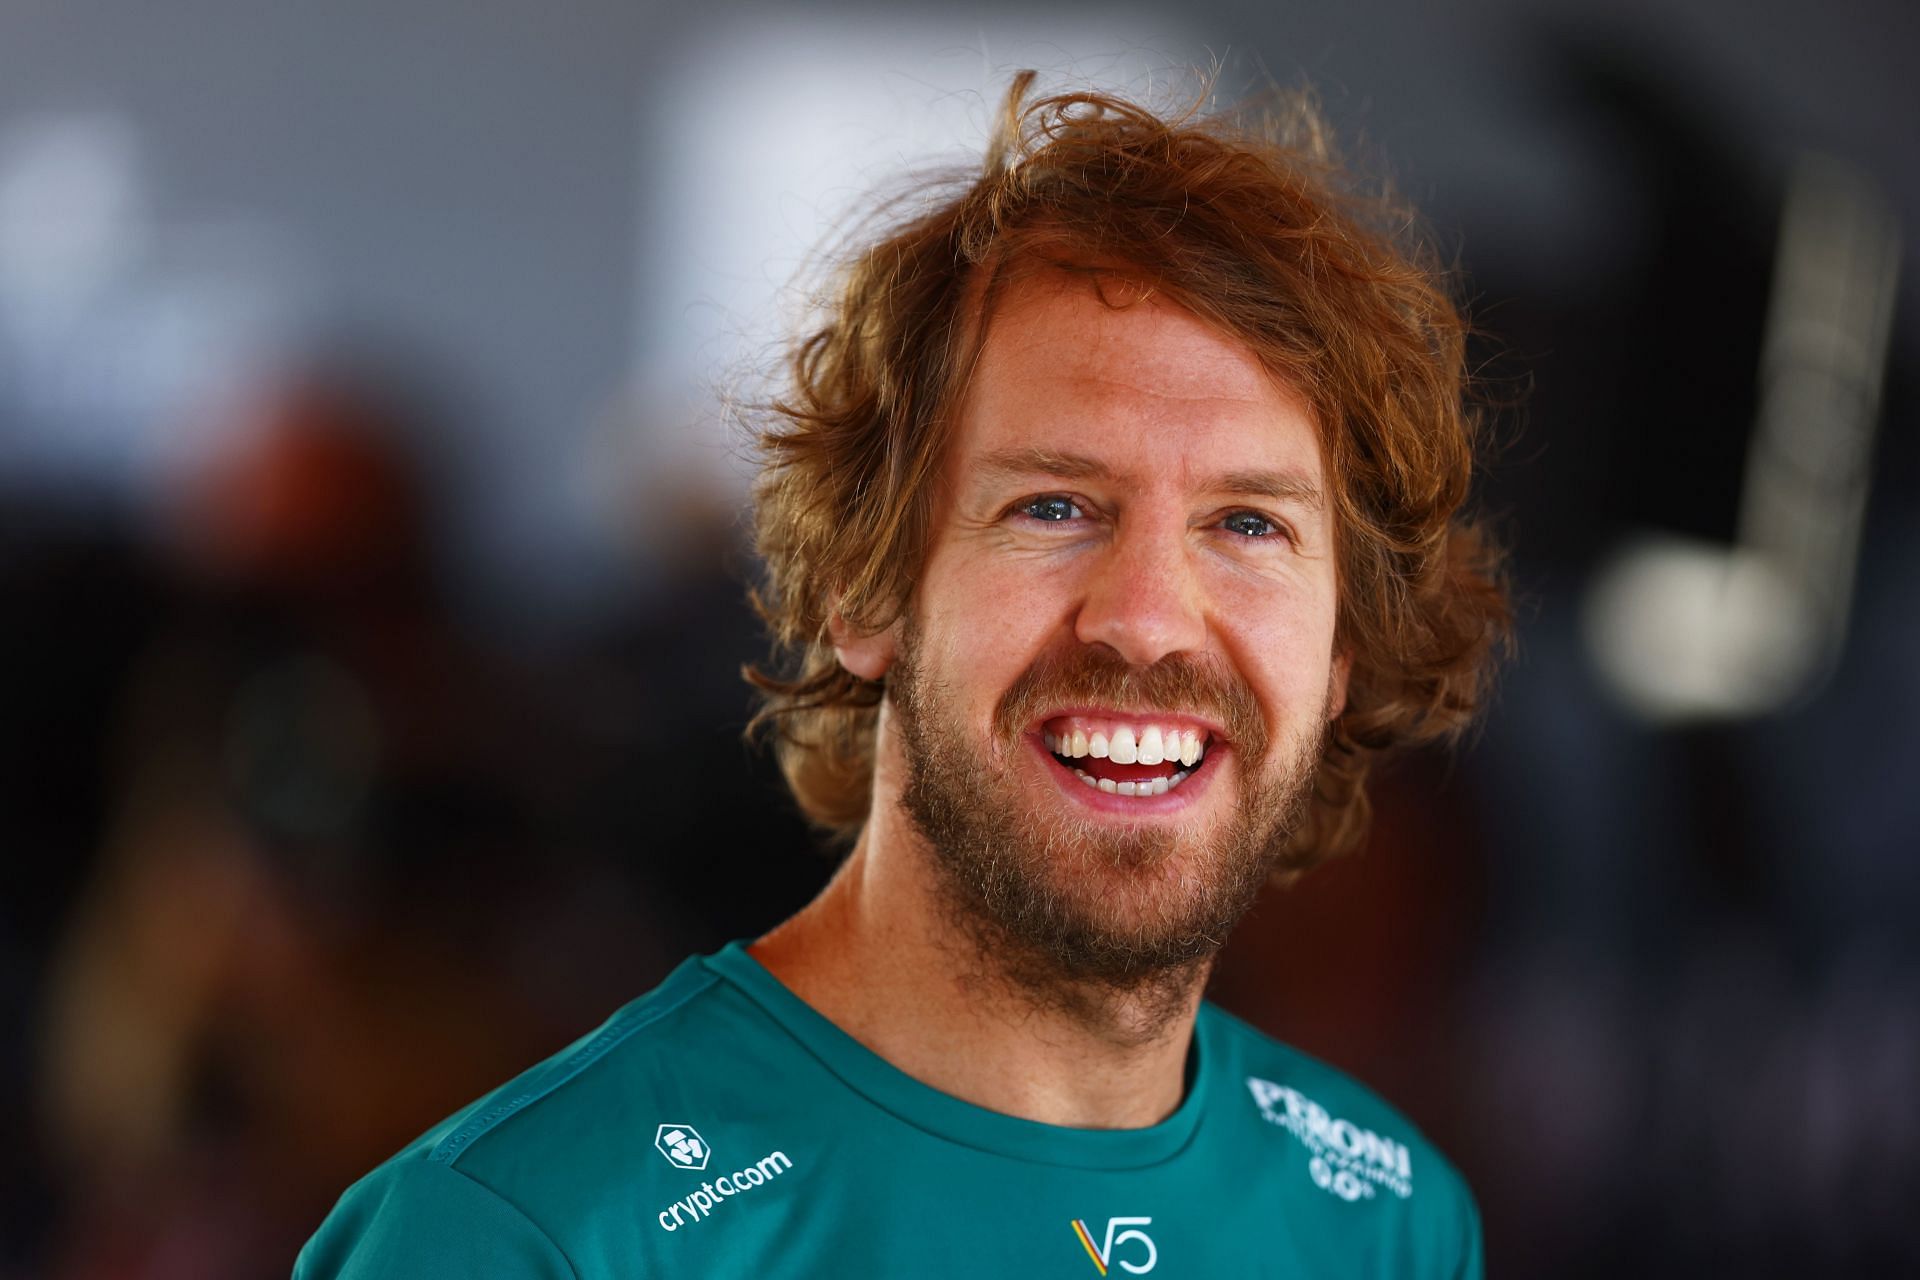 Sebastian Vettel scored his best result of the season